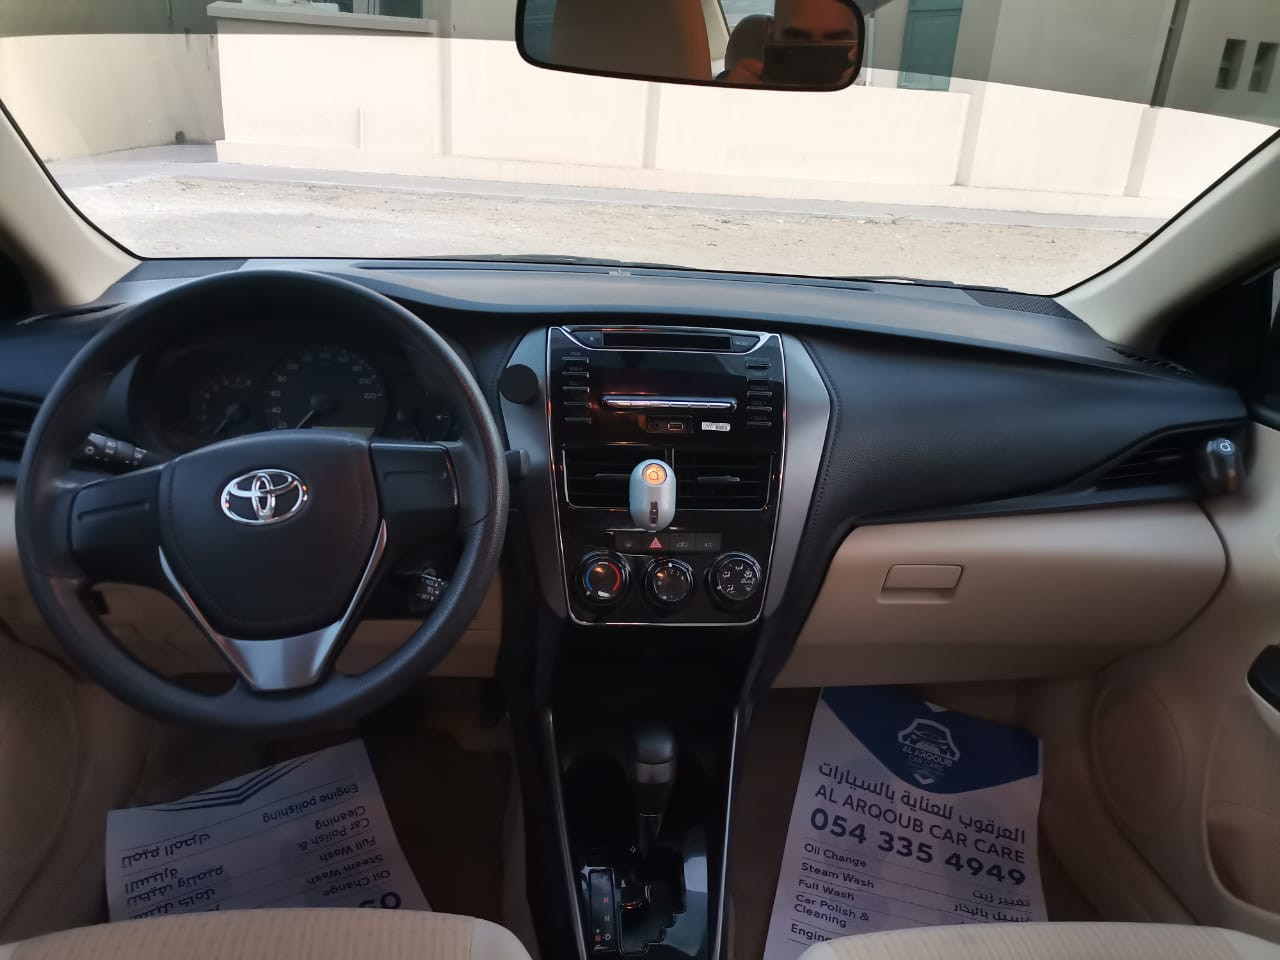 White Toyota Yaris 2021